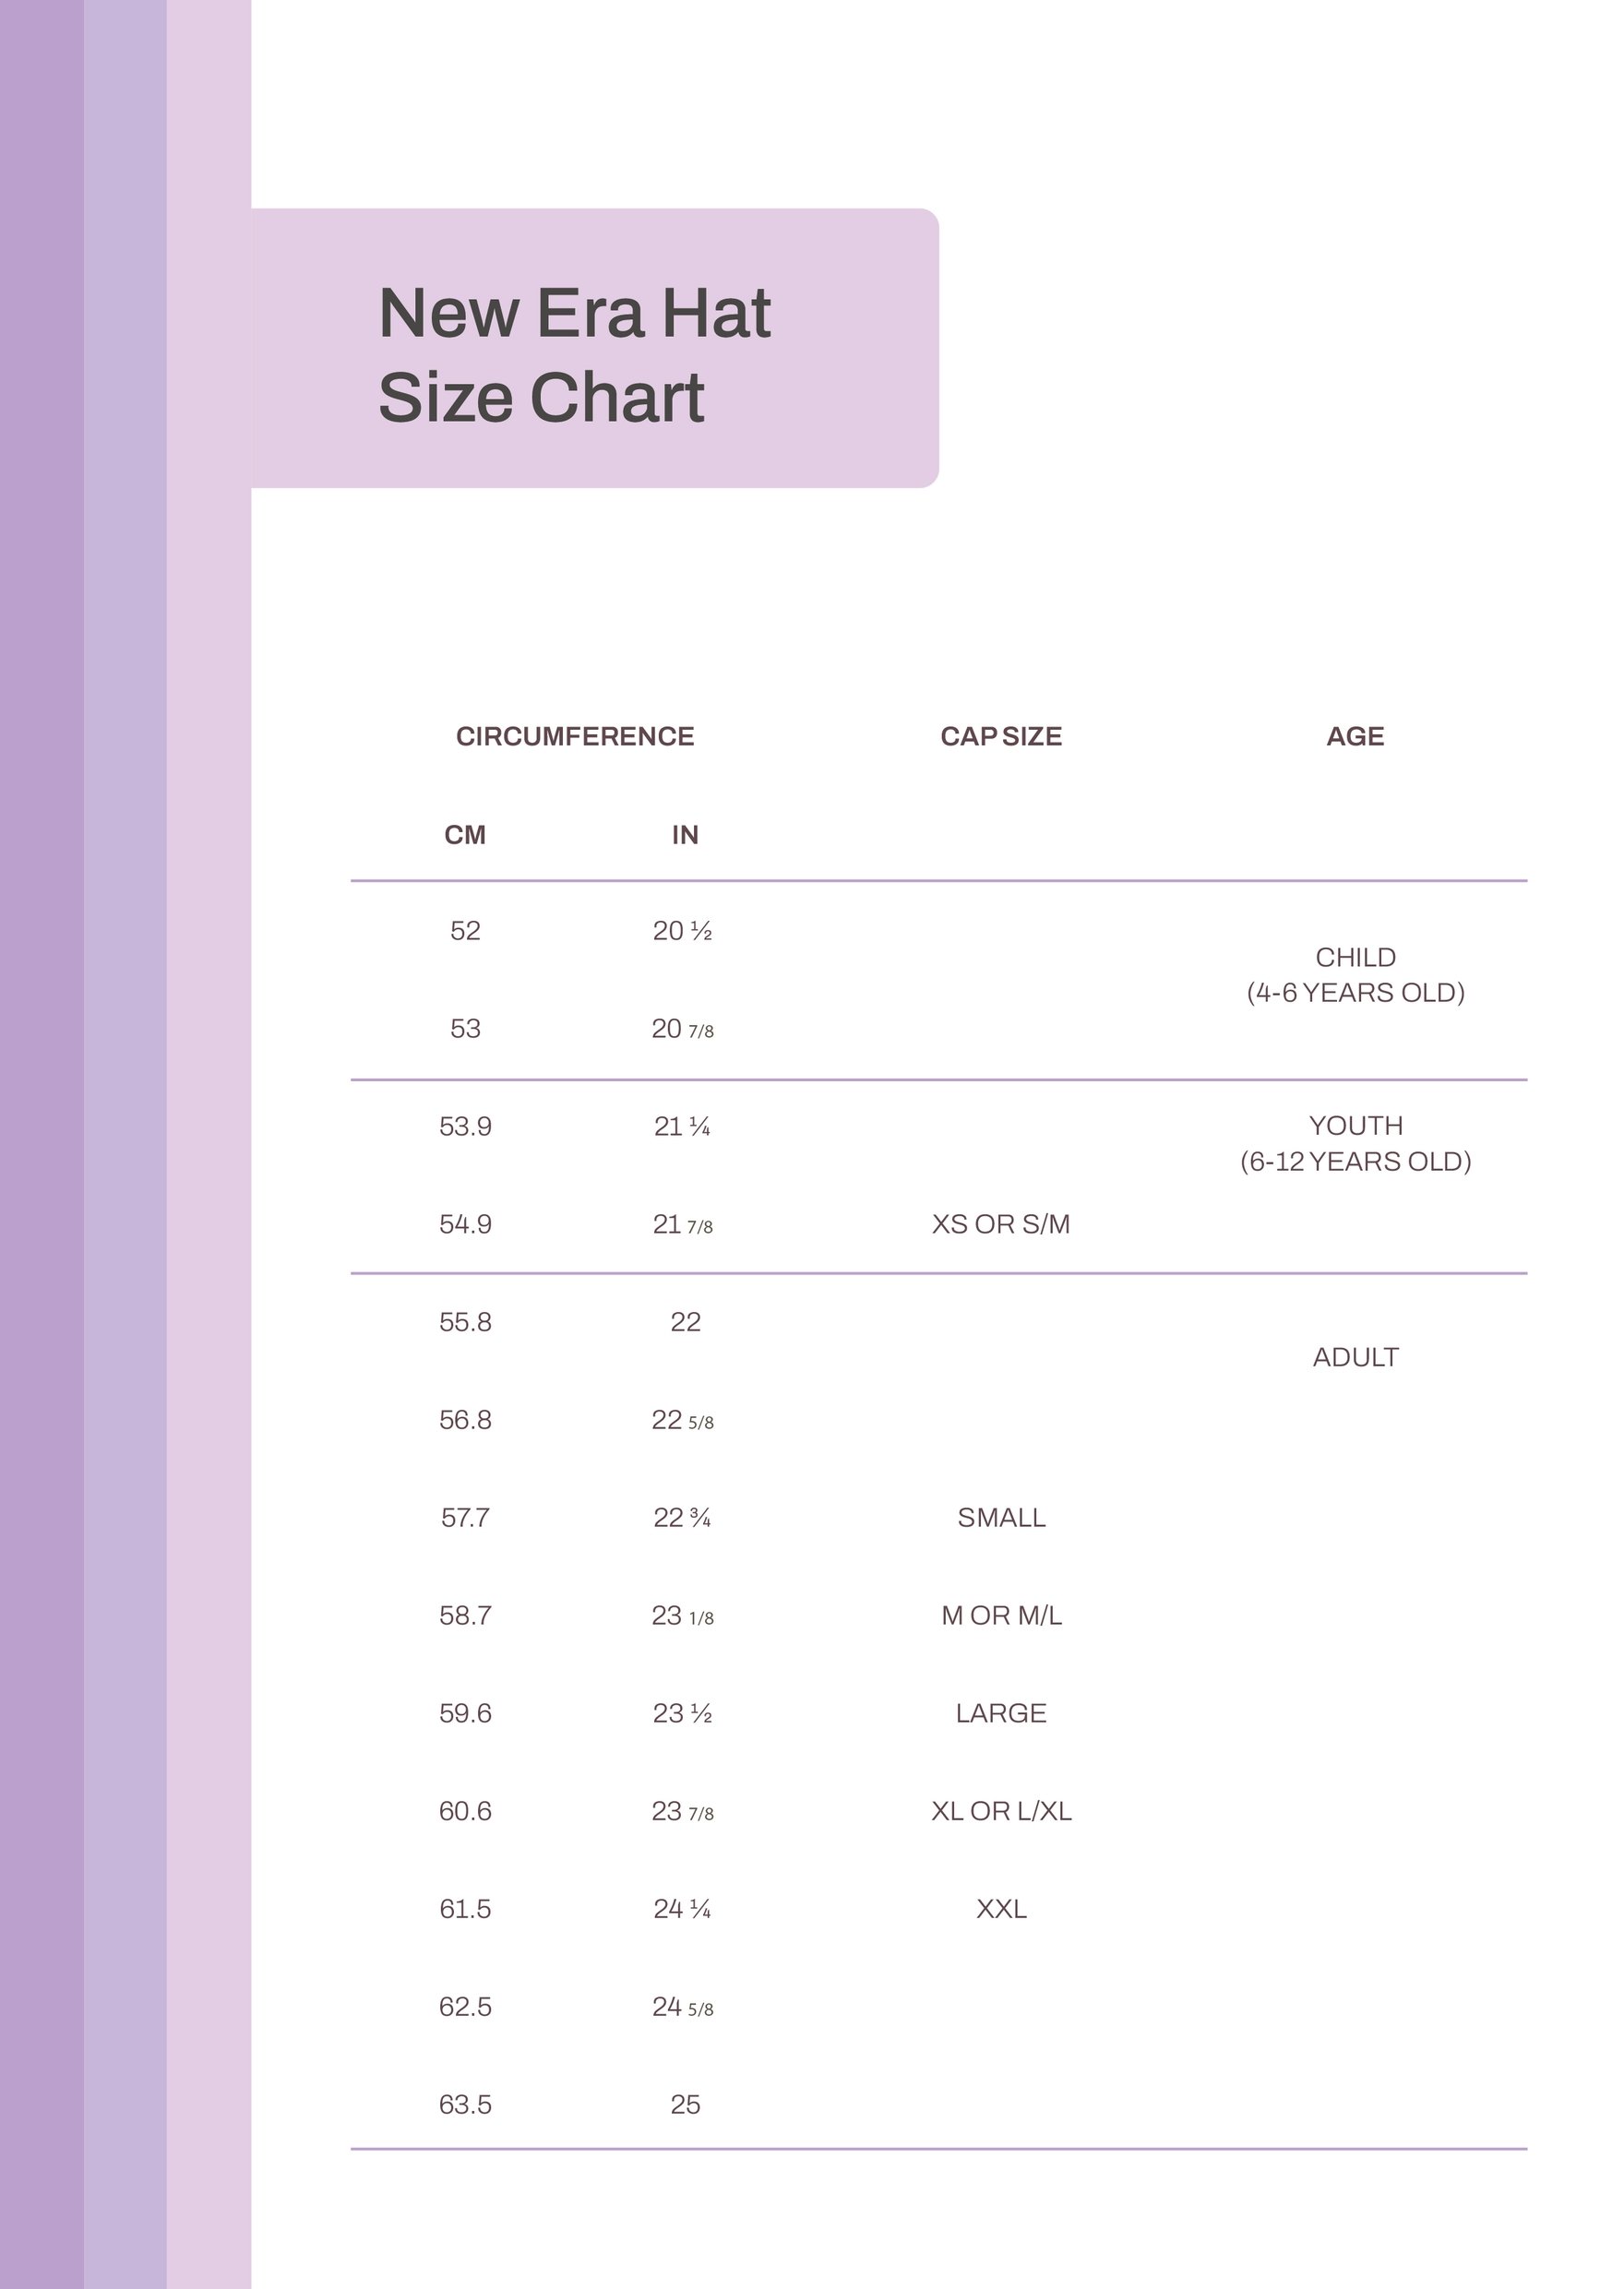 New Era Hat Size Chart in PDF